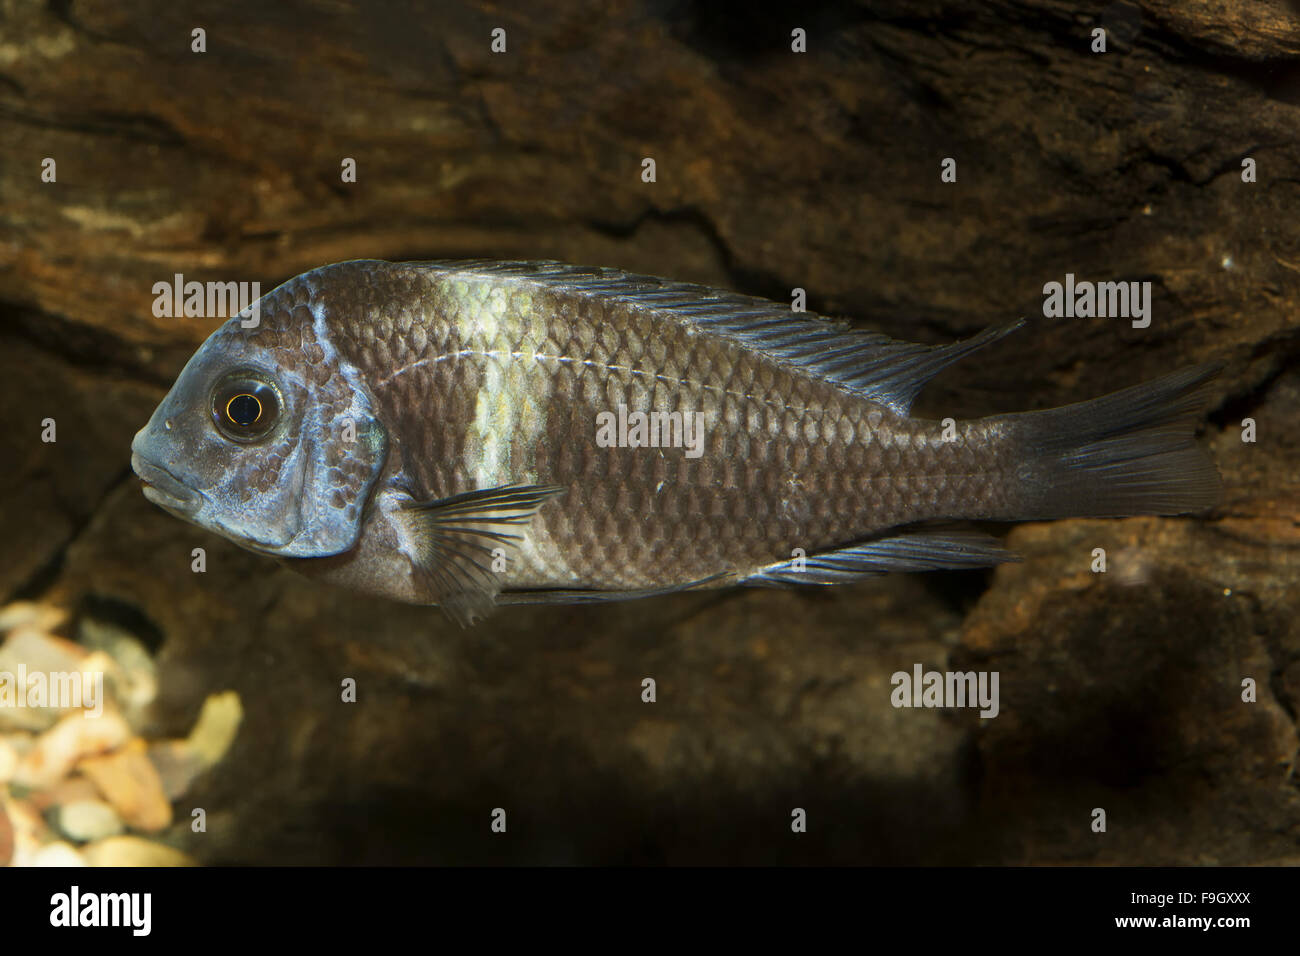 Cichlid fish from genus Tropheus in the aquarium Stock Photo